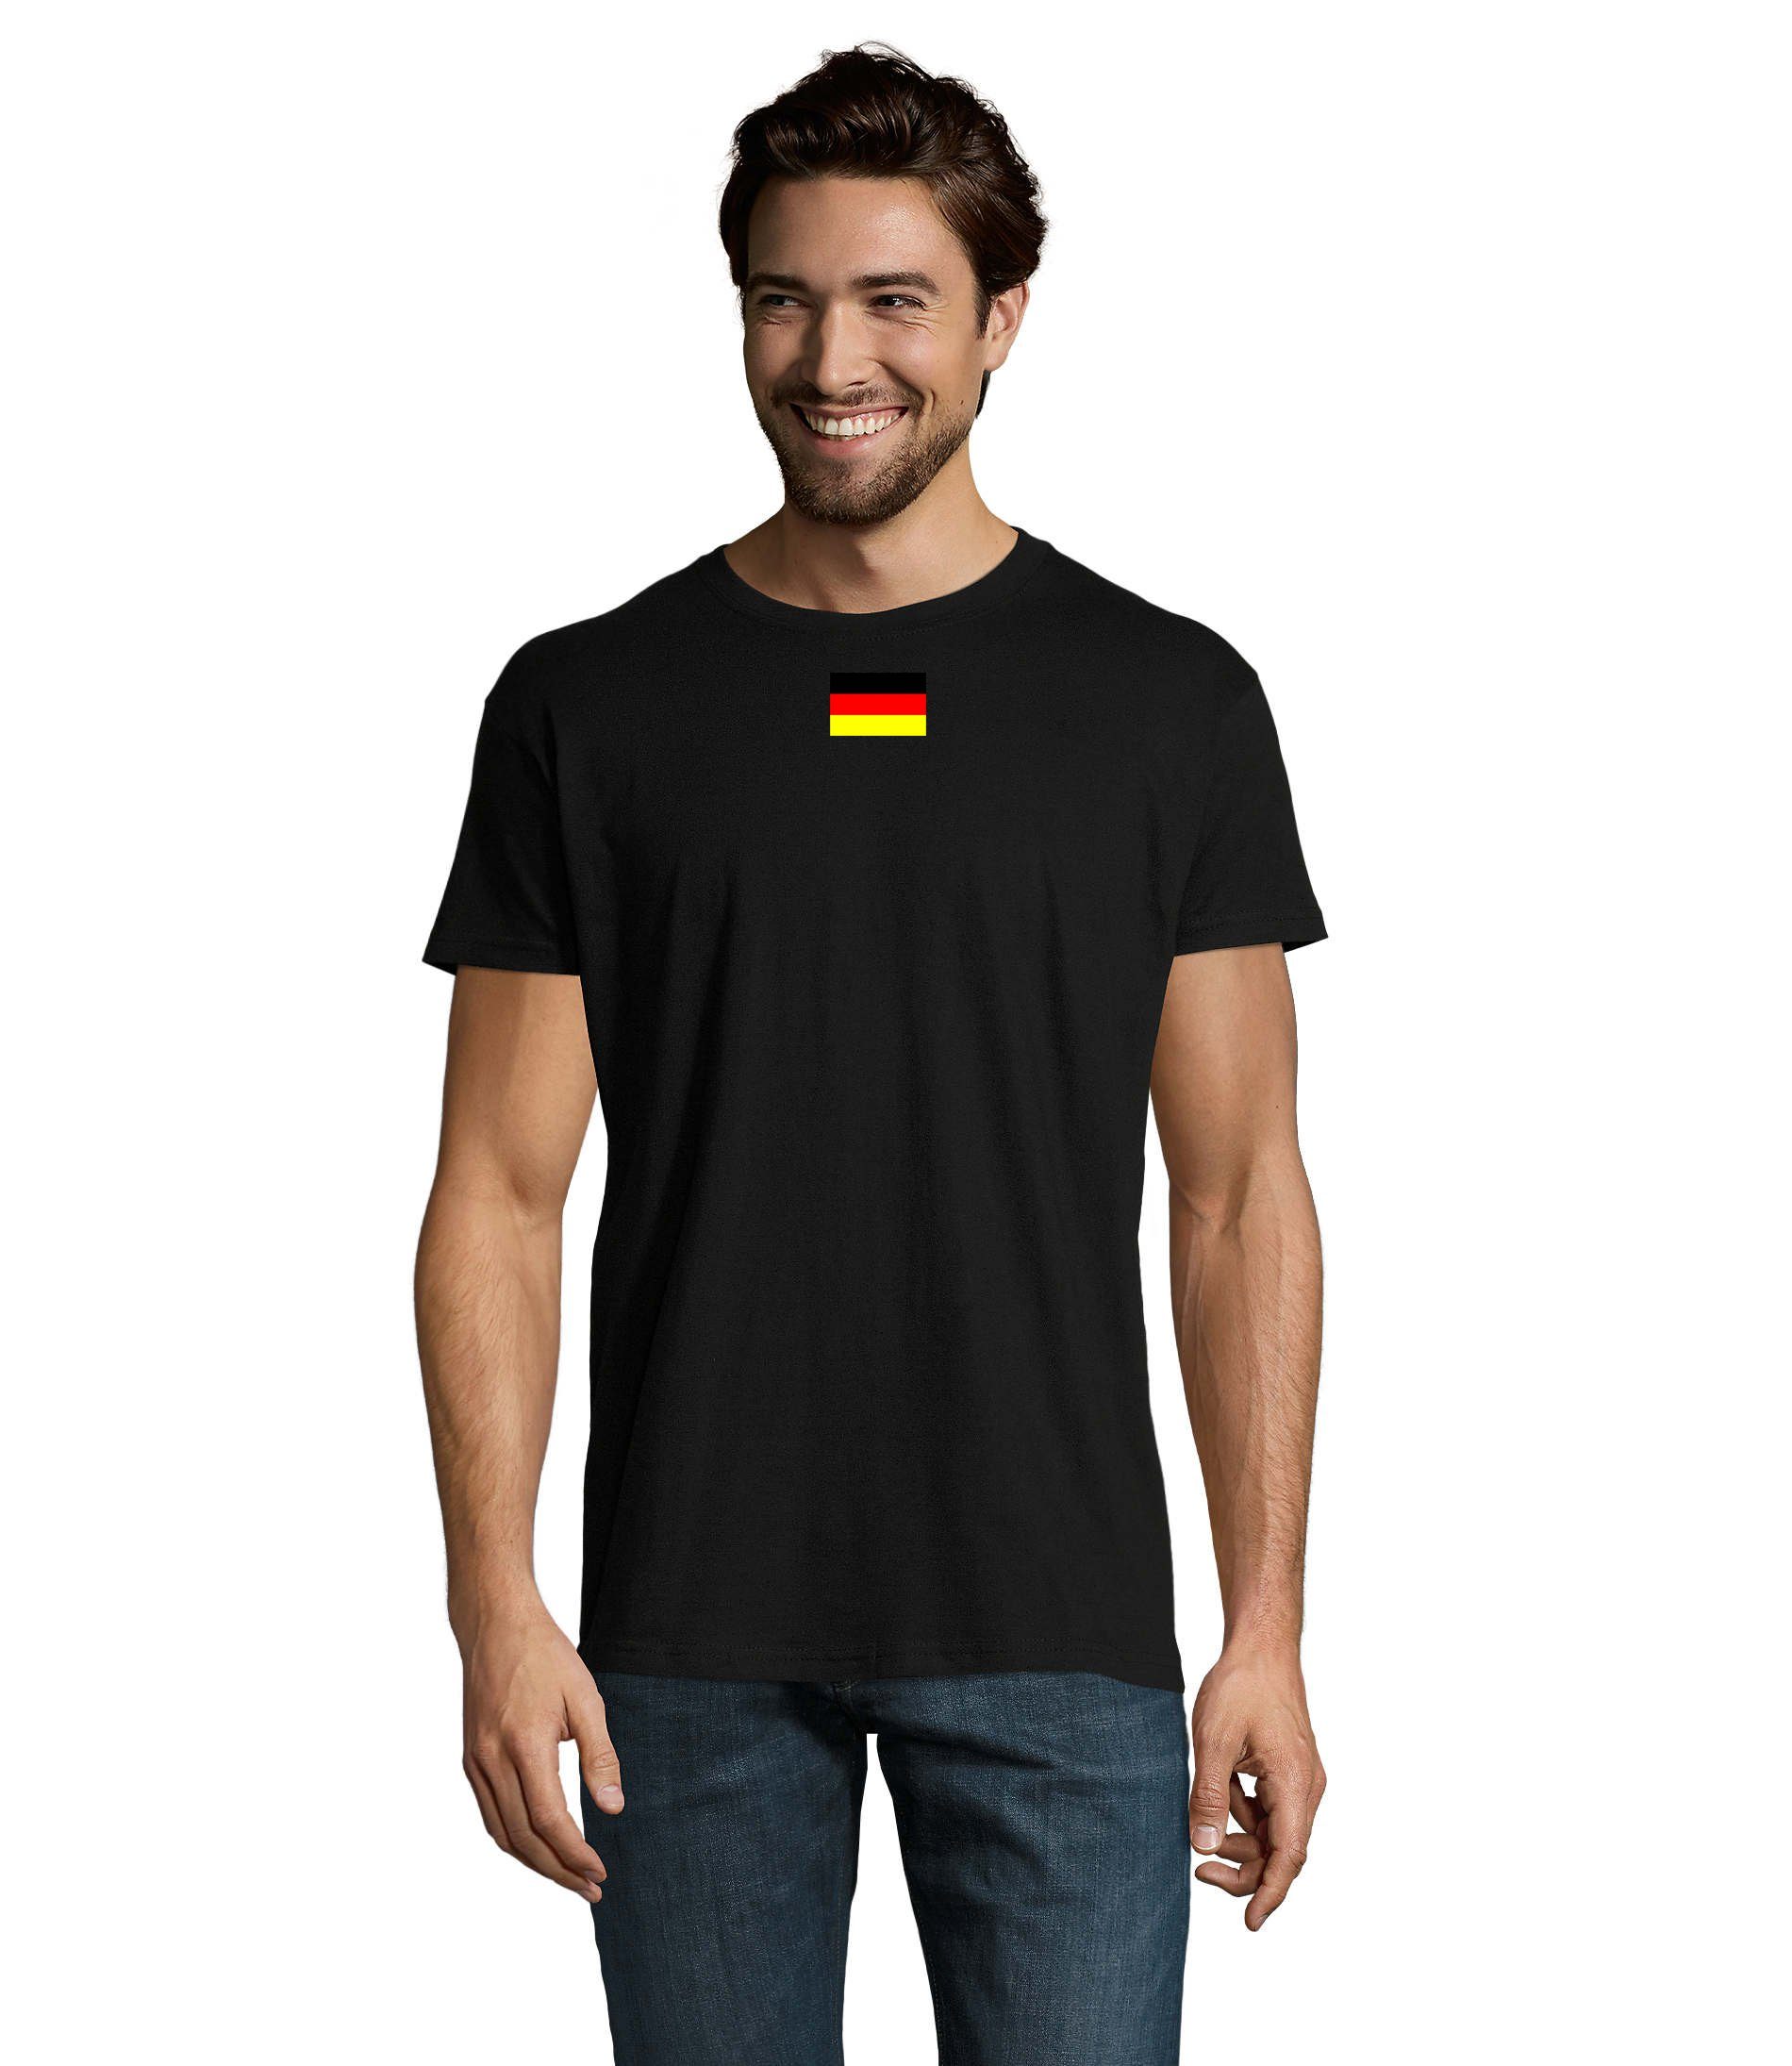 Nato Armee T-Shirt Brownie Deutschland Germany Schwarz Ukraine Army & Blondie USA Herren Nation